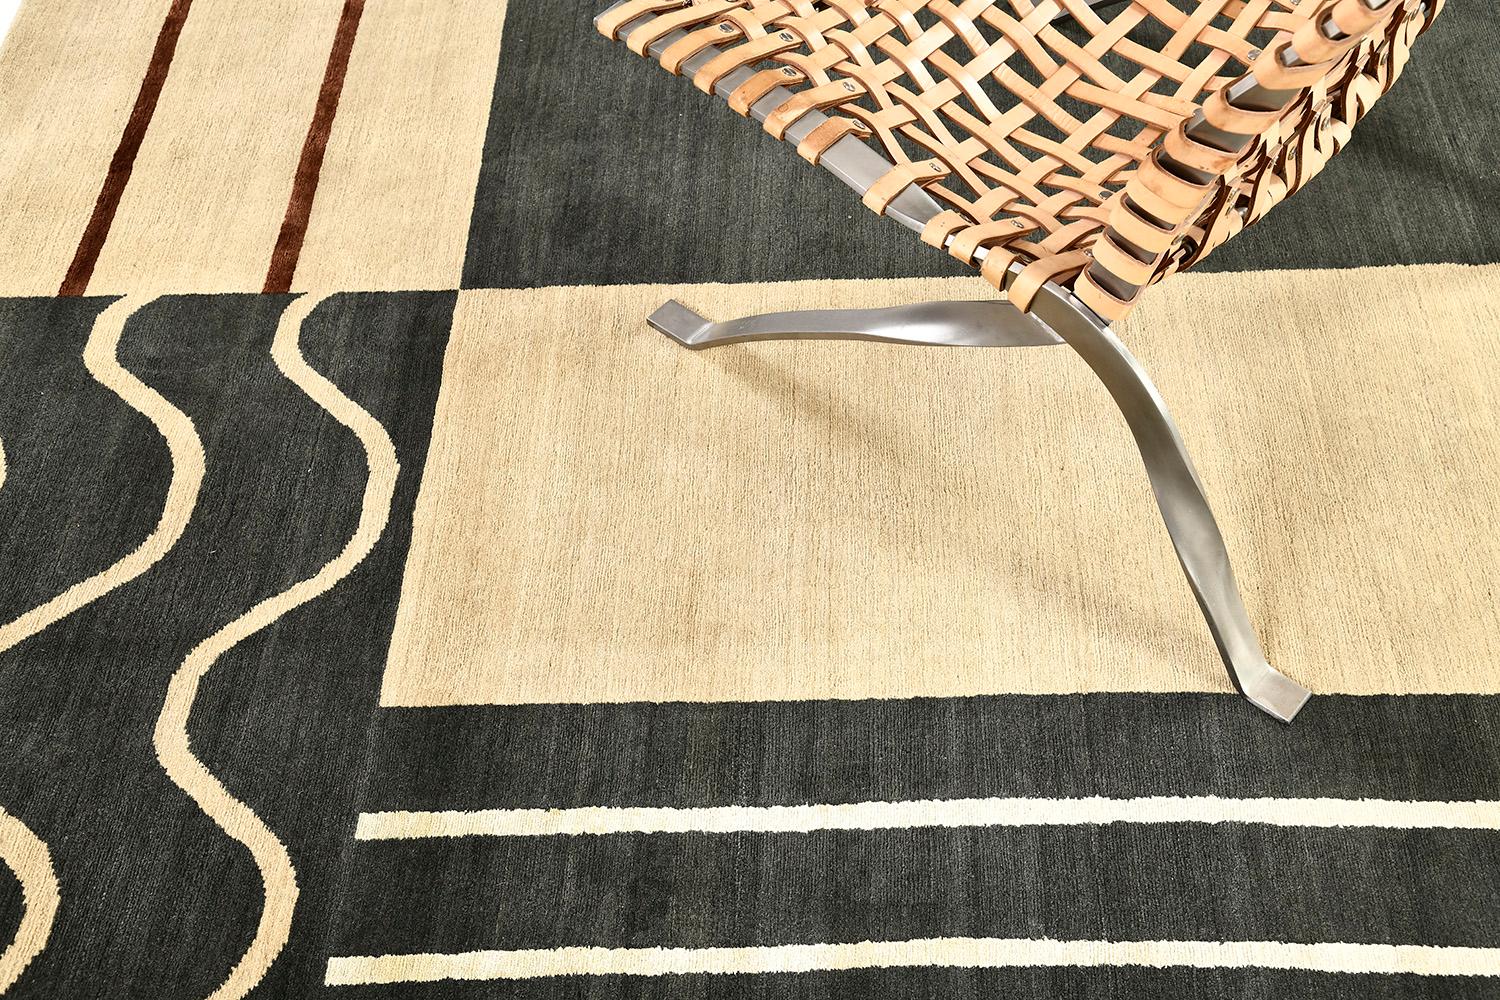 Une création exceptionnelle du tapis Mondrian qui établit avec élégance une complexité exceptionnelle à travers un motif géométrique relié par de gracieux schémas naturels inversés. Ce tapis contemporain est dans les tons puissants de sable et de